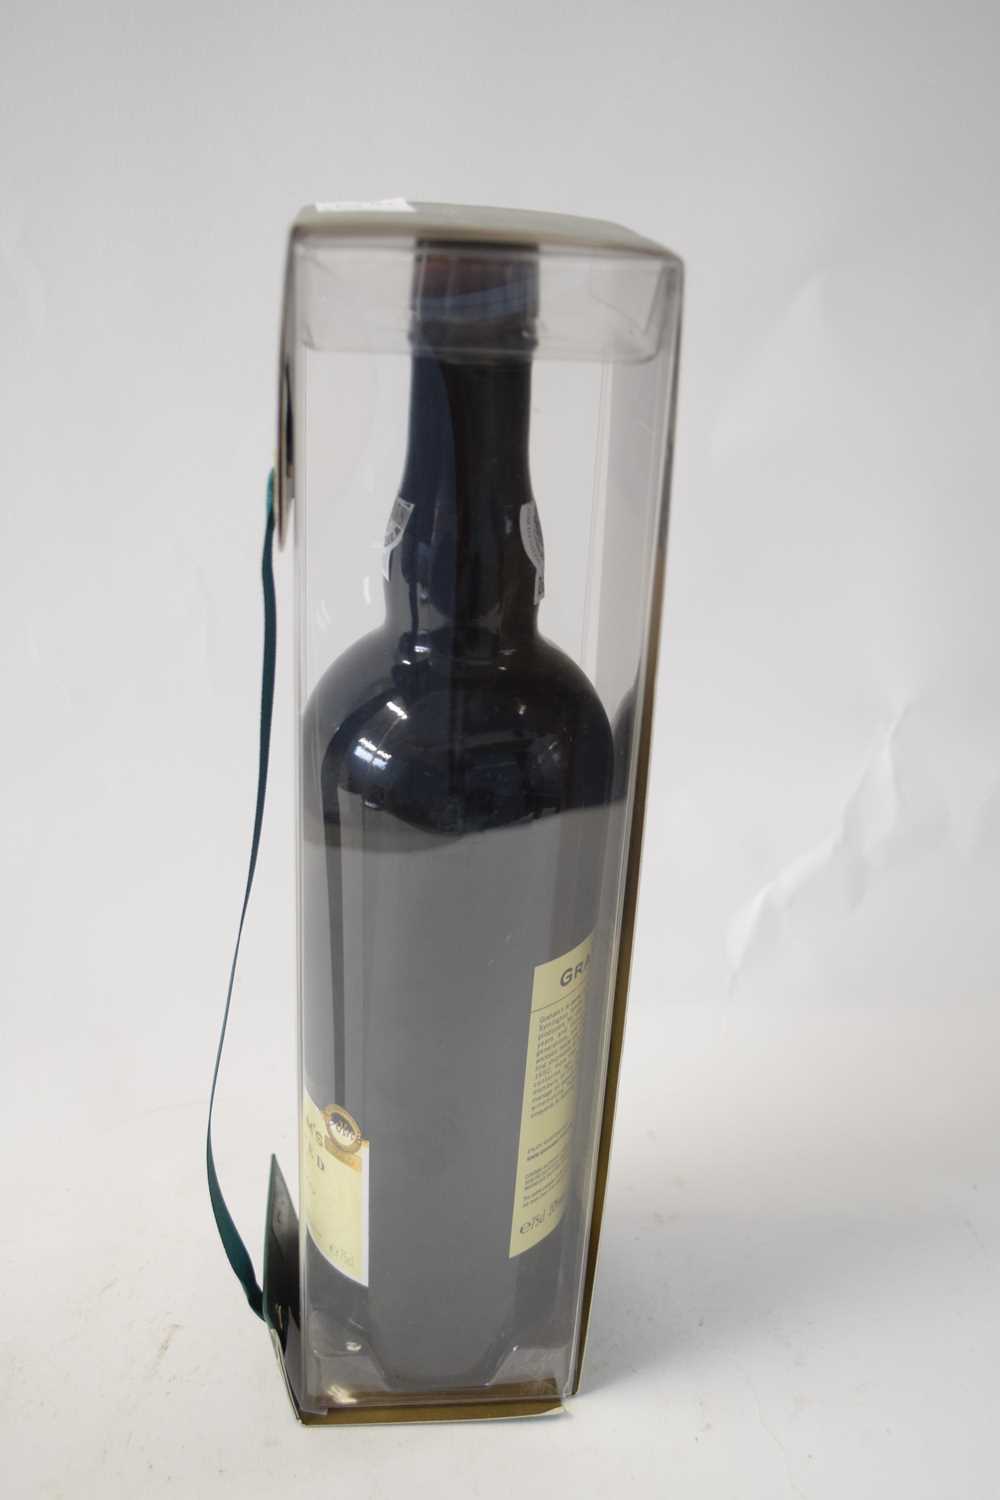 2002 Graham's Vintage Crusted Port in presentation case, 1 bottle - Image 3 of 3